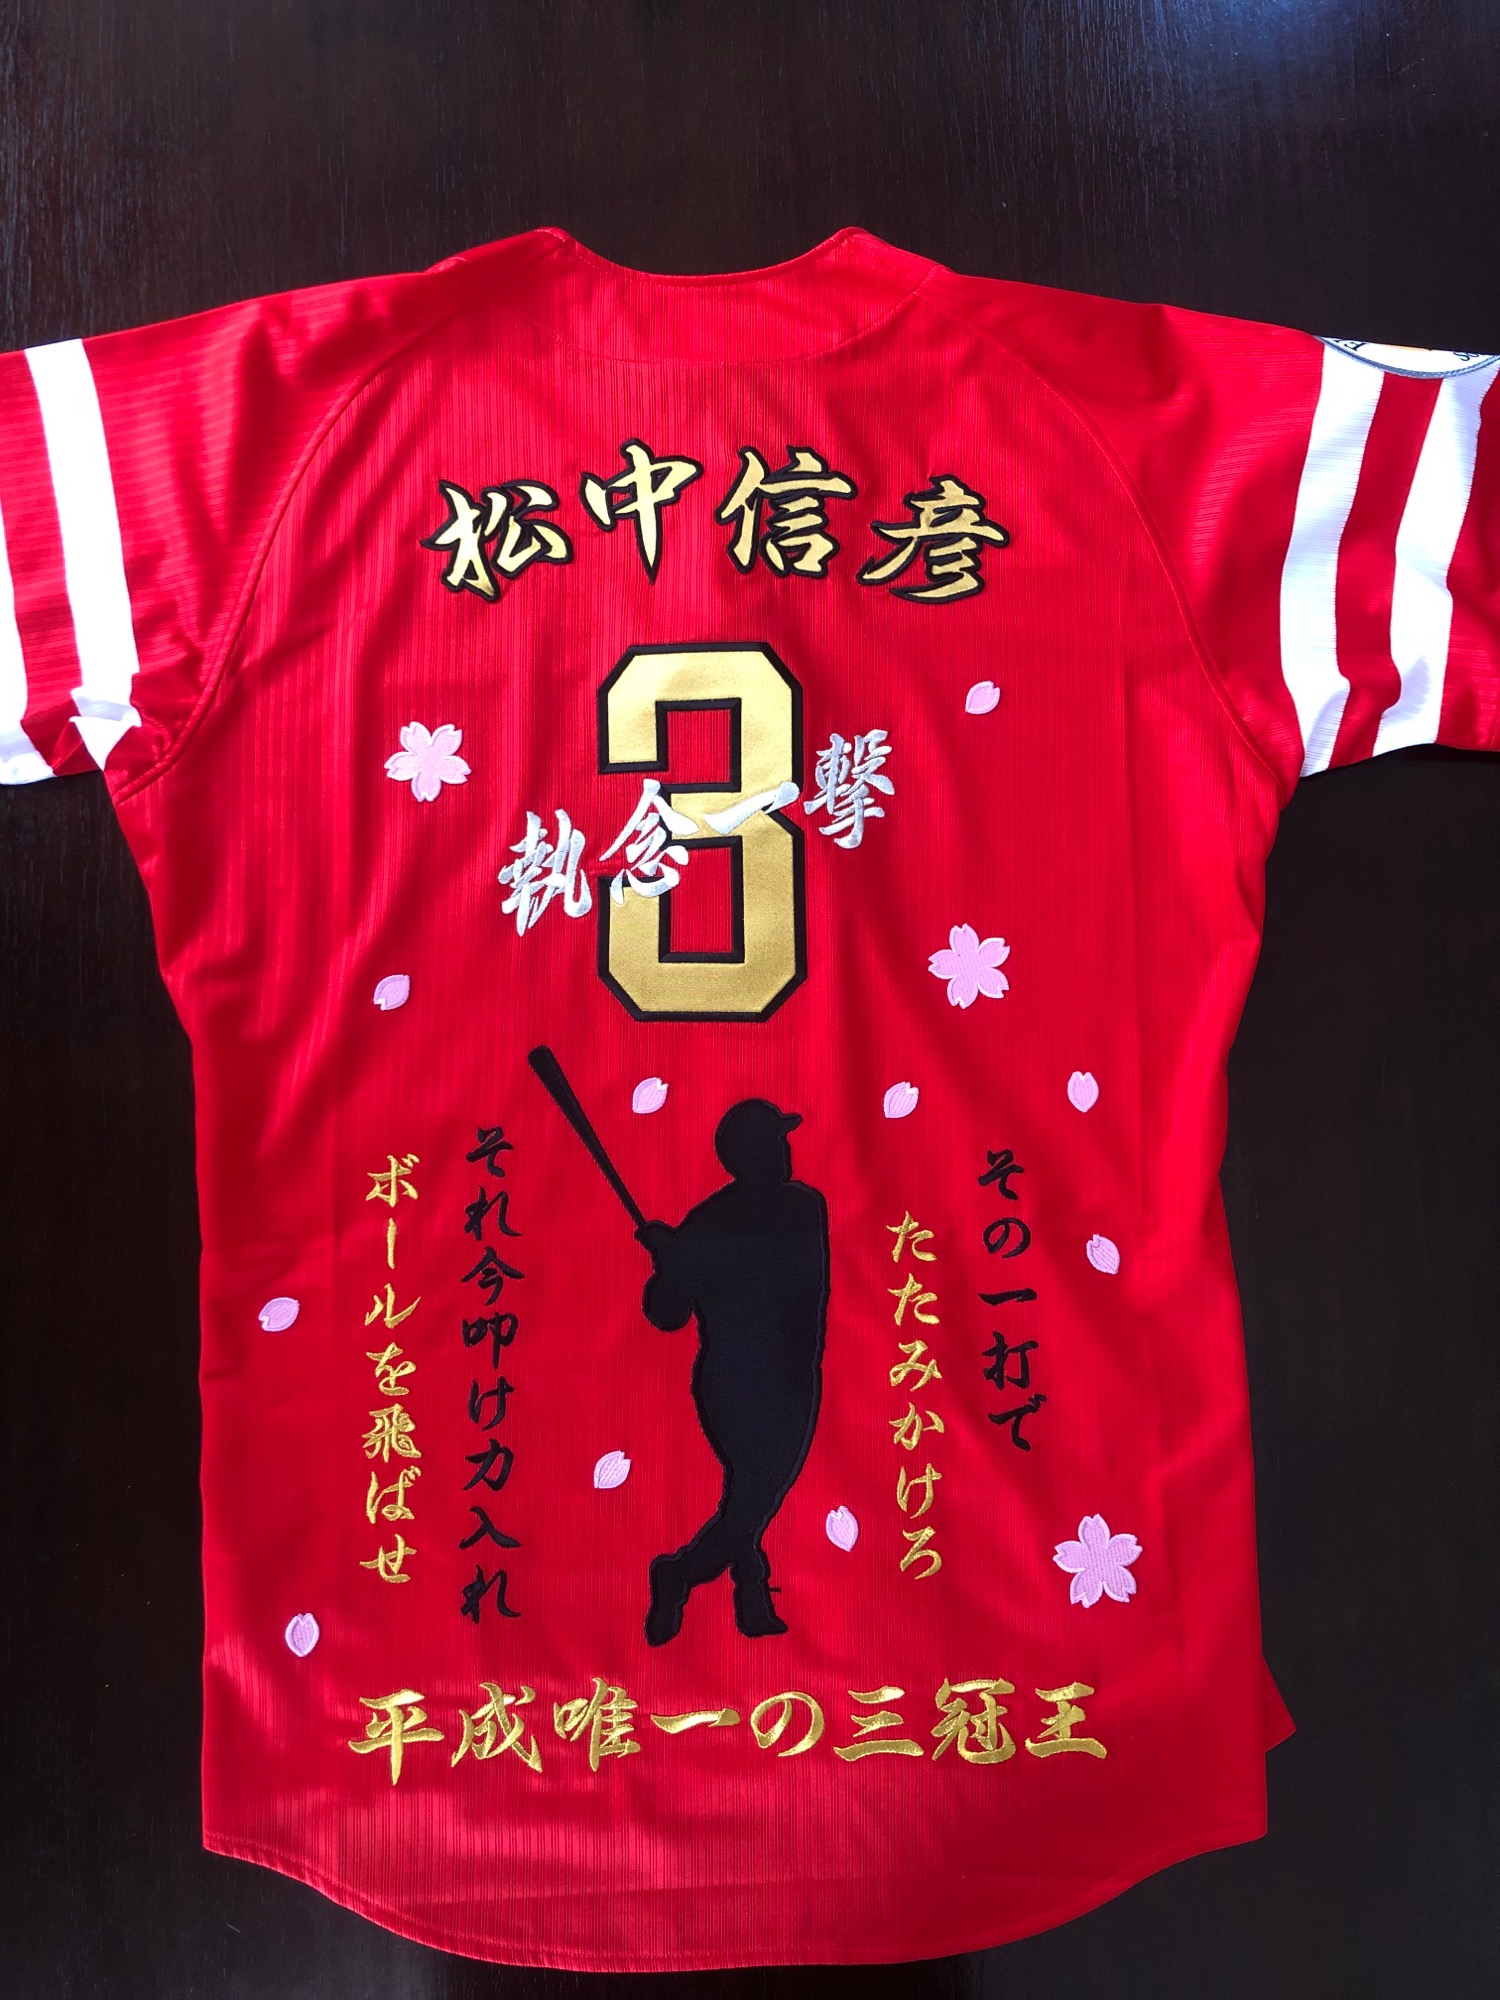 福岡ソフトバンクホークス 鷹の祭典 カチドキレッド2014への松中信彦